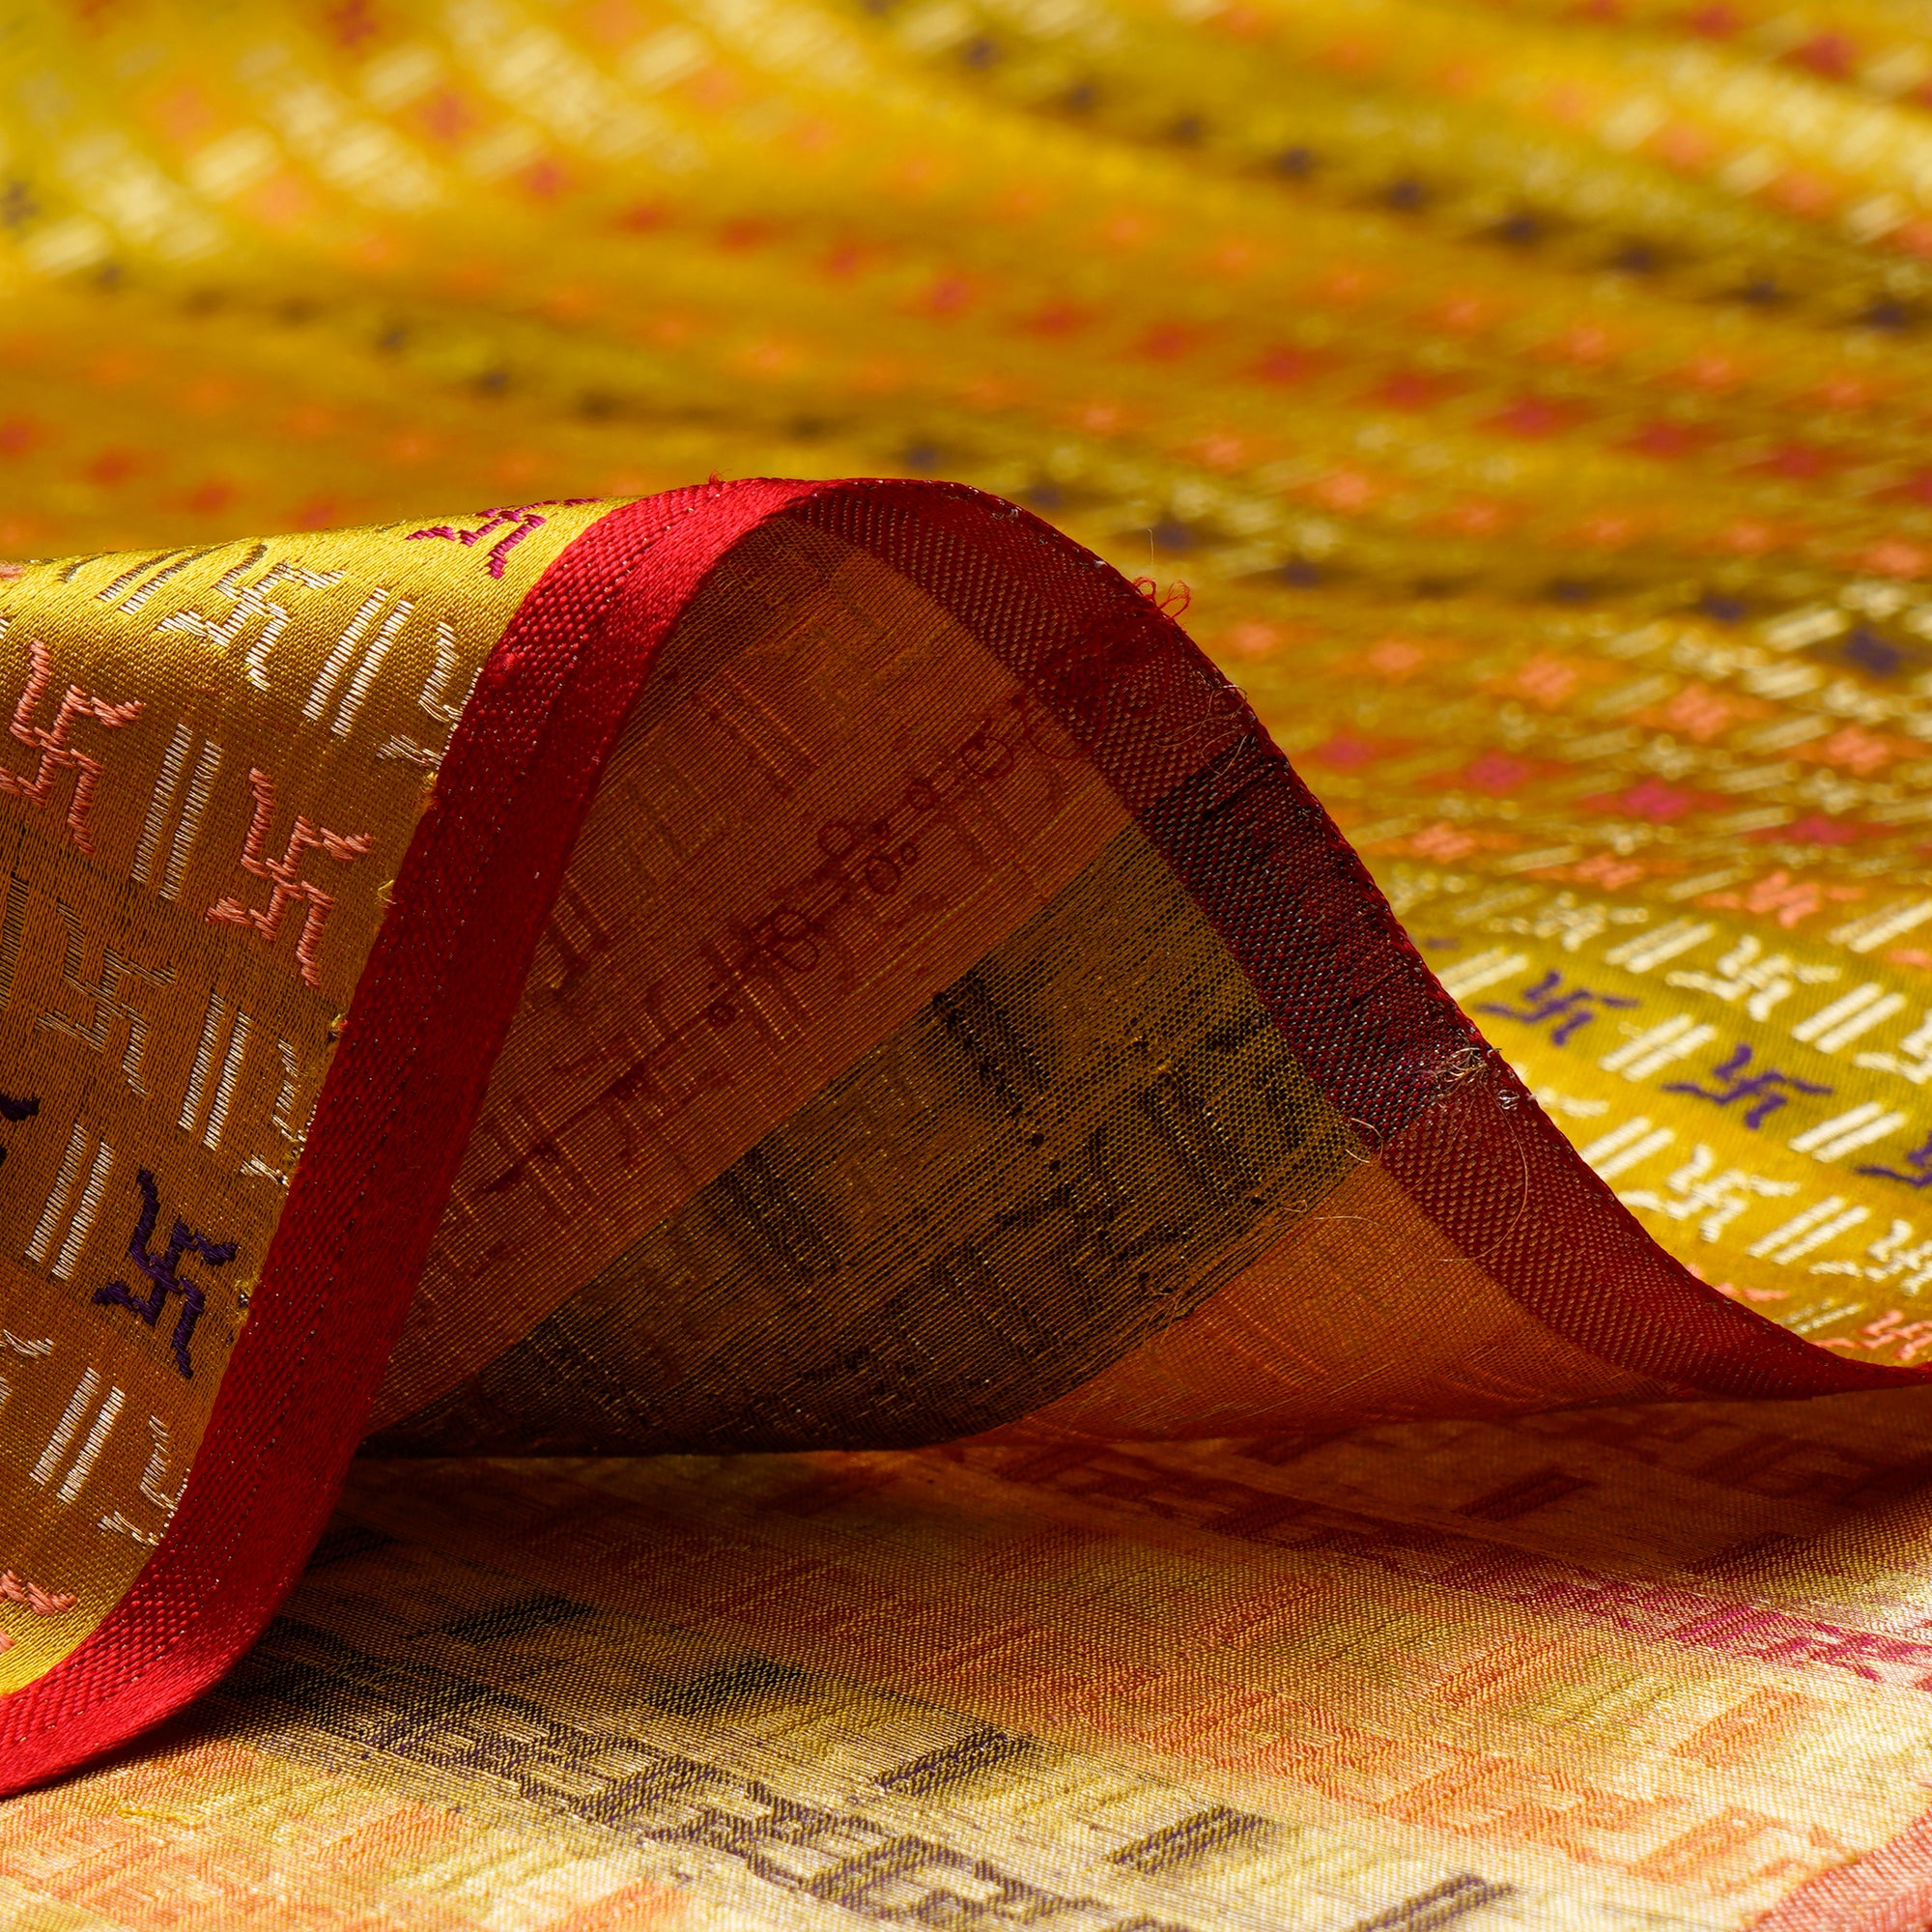 Super Lemon Handwoven Premium Banarasi Meenakari Brocade Silk Fabric